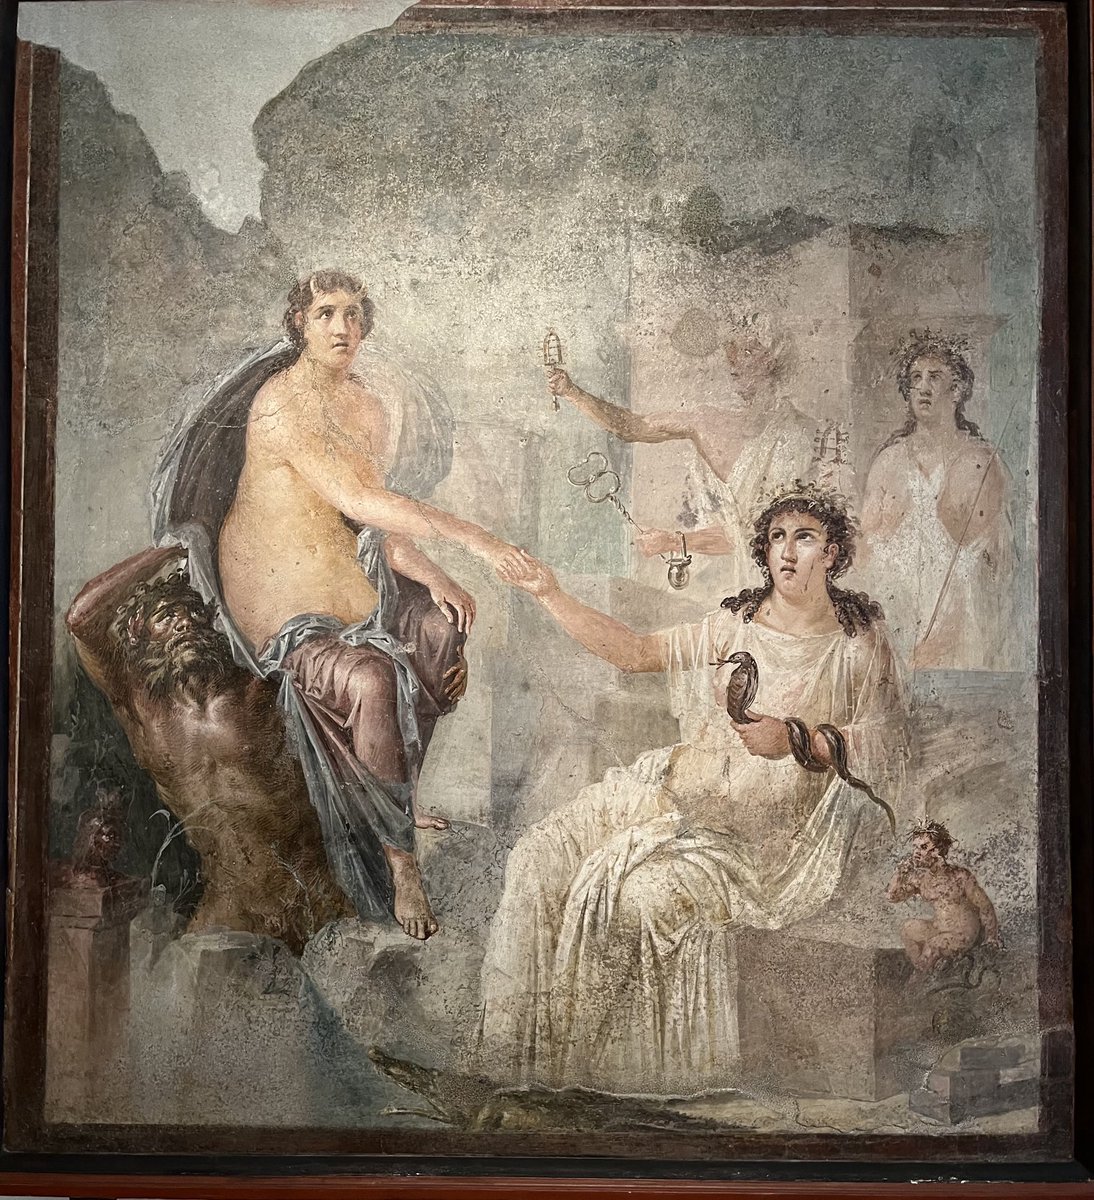 Io et Isis, fresque provenant du sanctuaire d’Isis à Pompéi, Ier siècle, Musée archéologique de Naples.